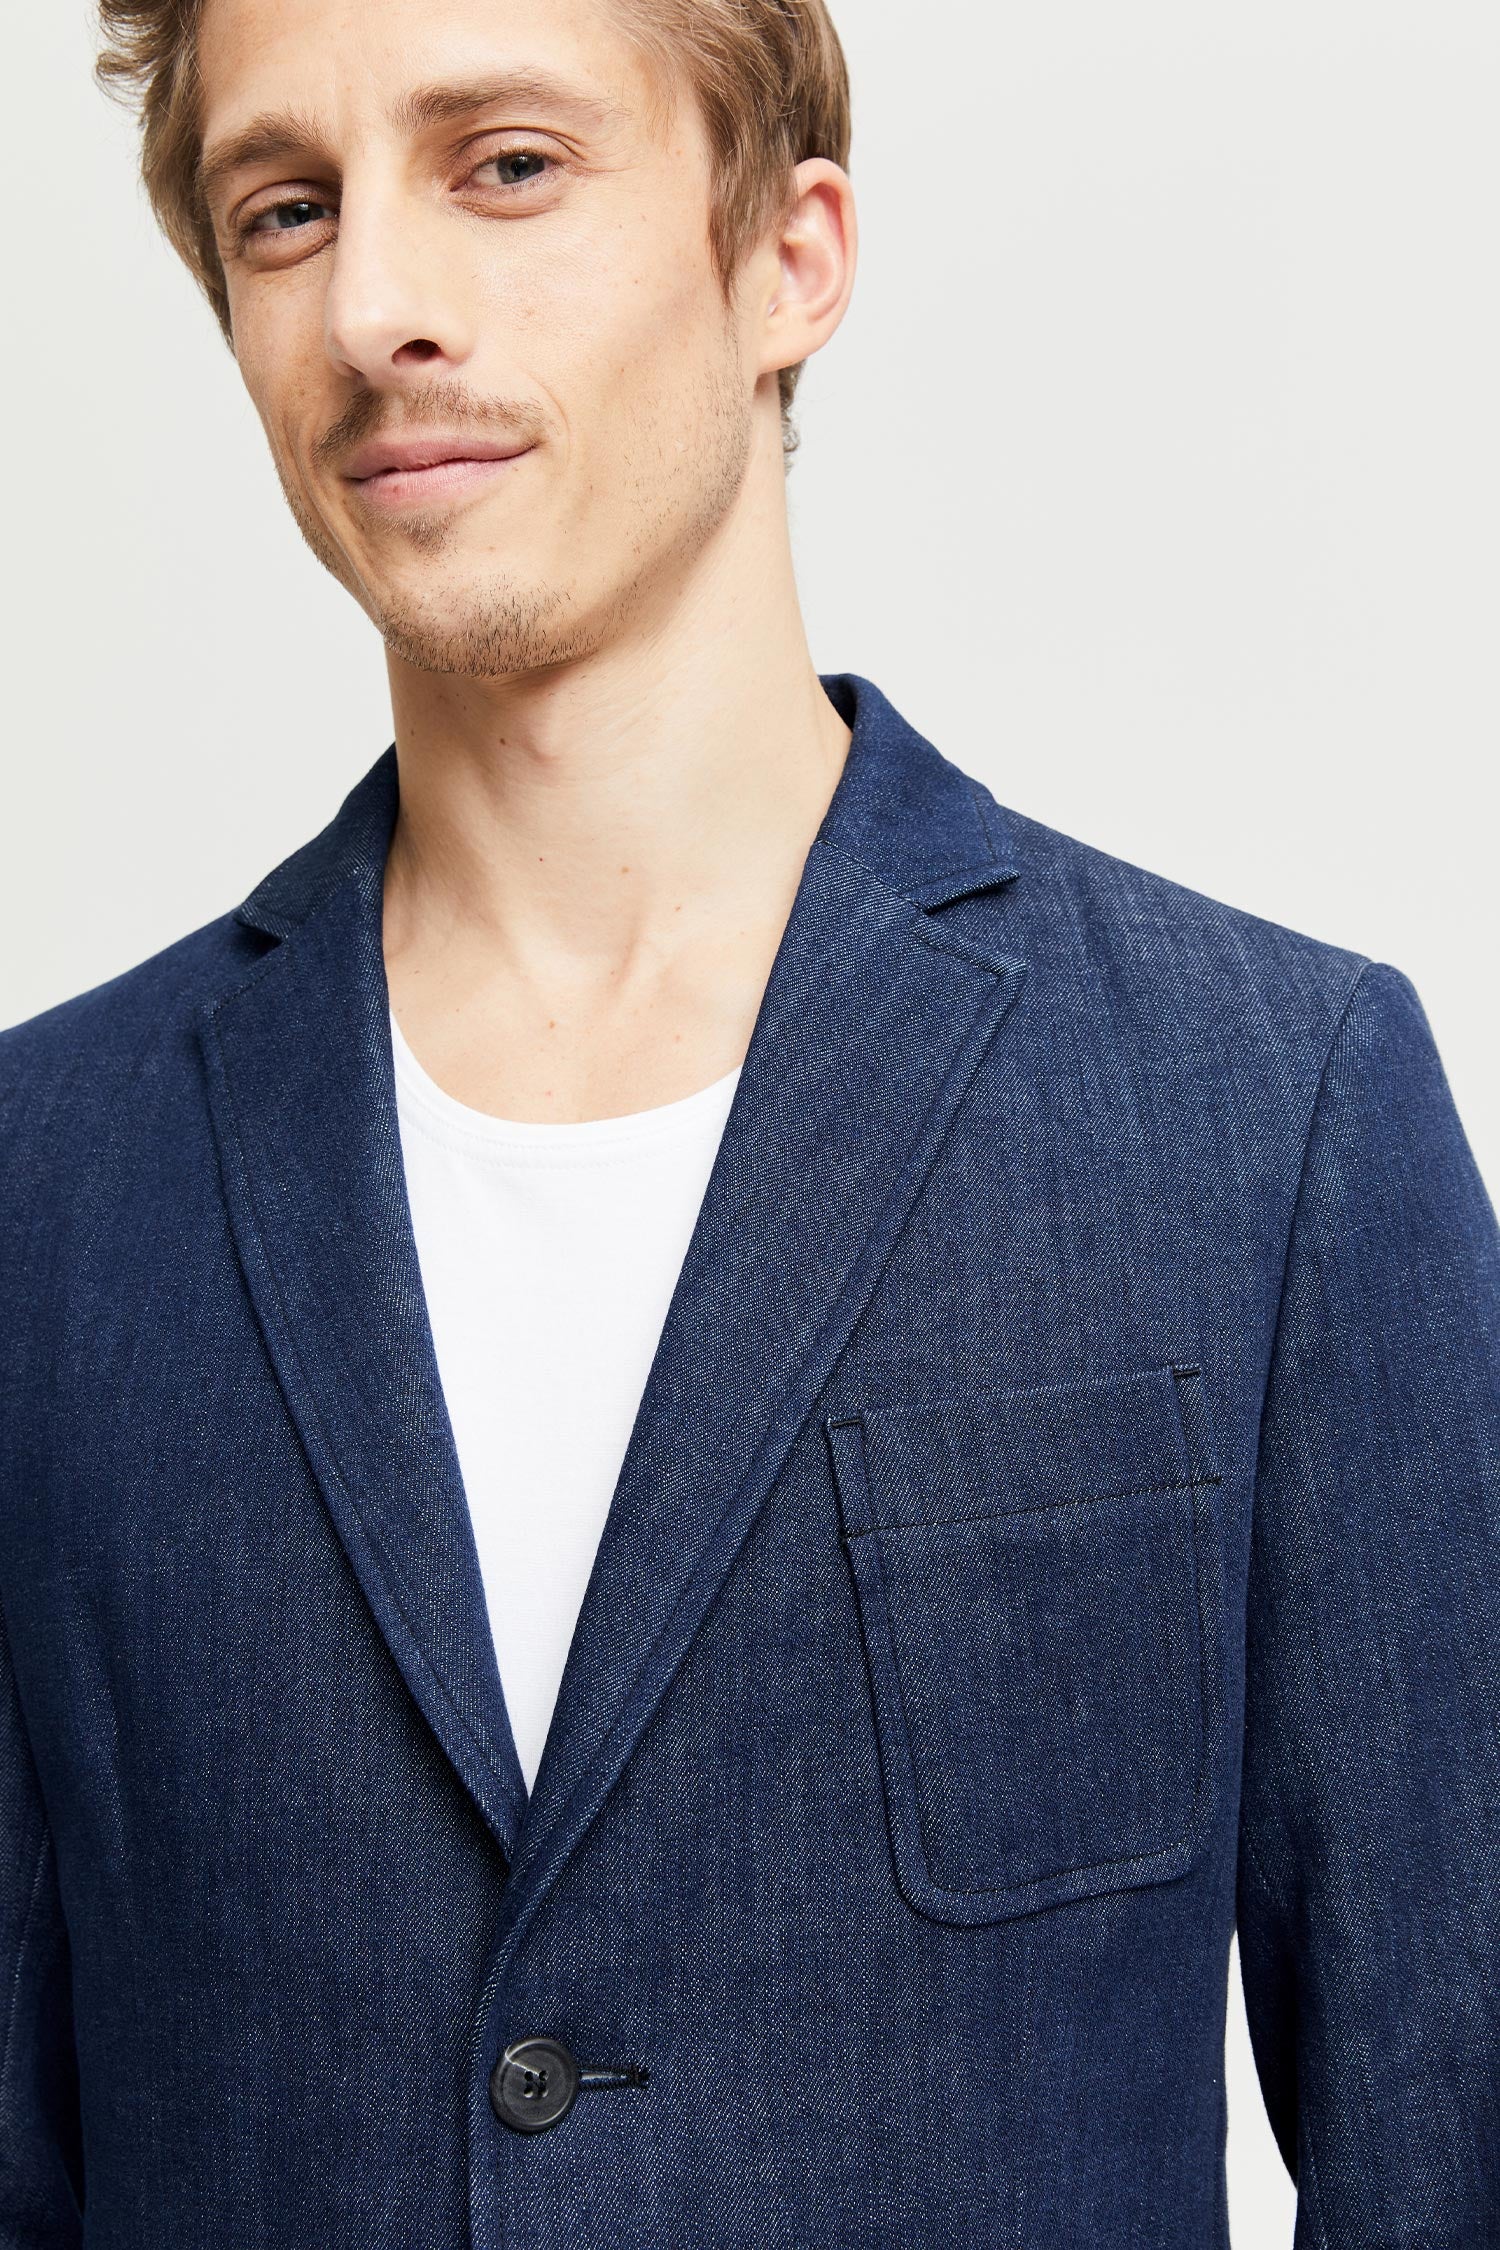 Frenn Jere sustainable premium quality GOTS organic cotton denim jacket indigo blue